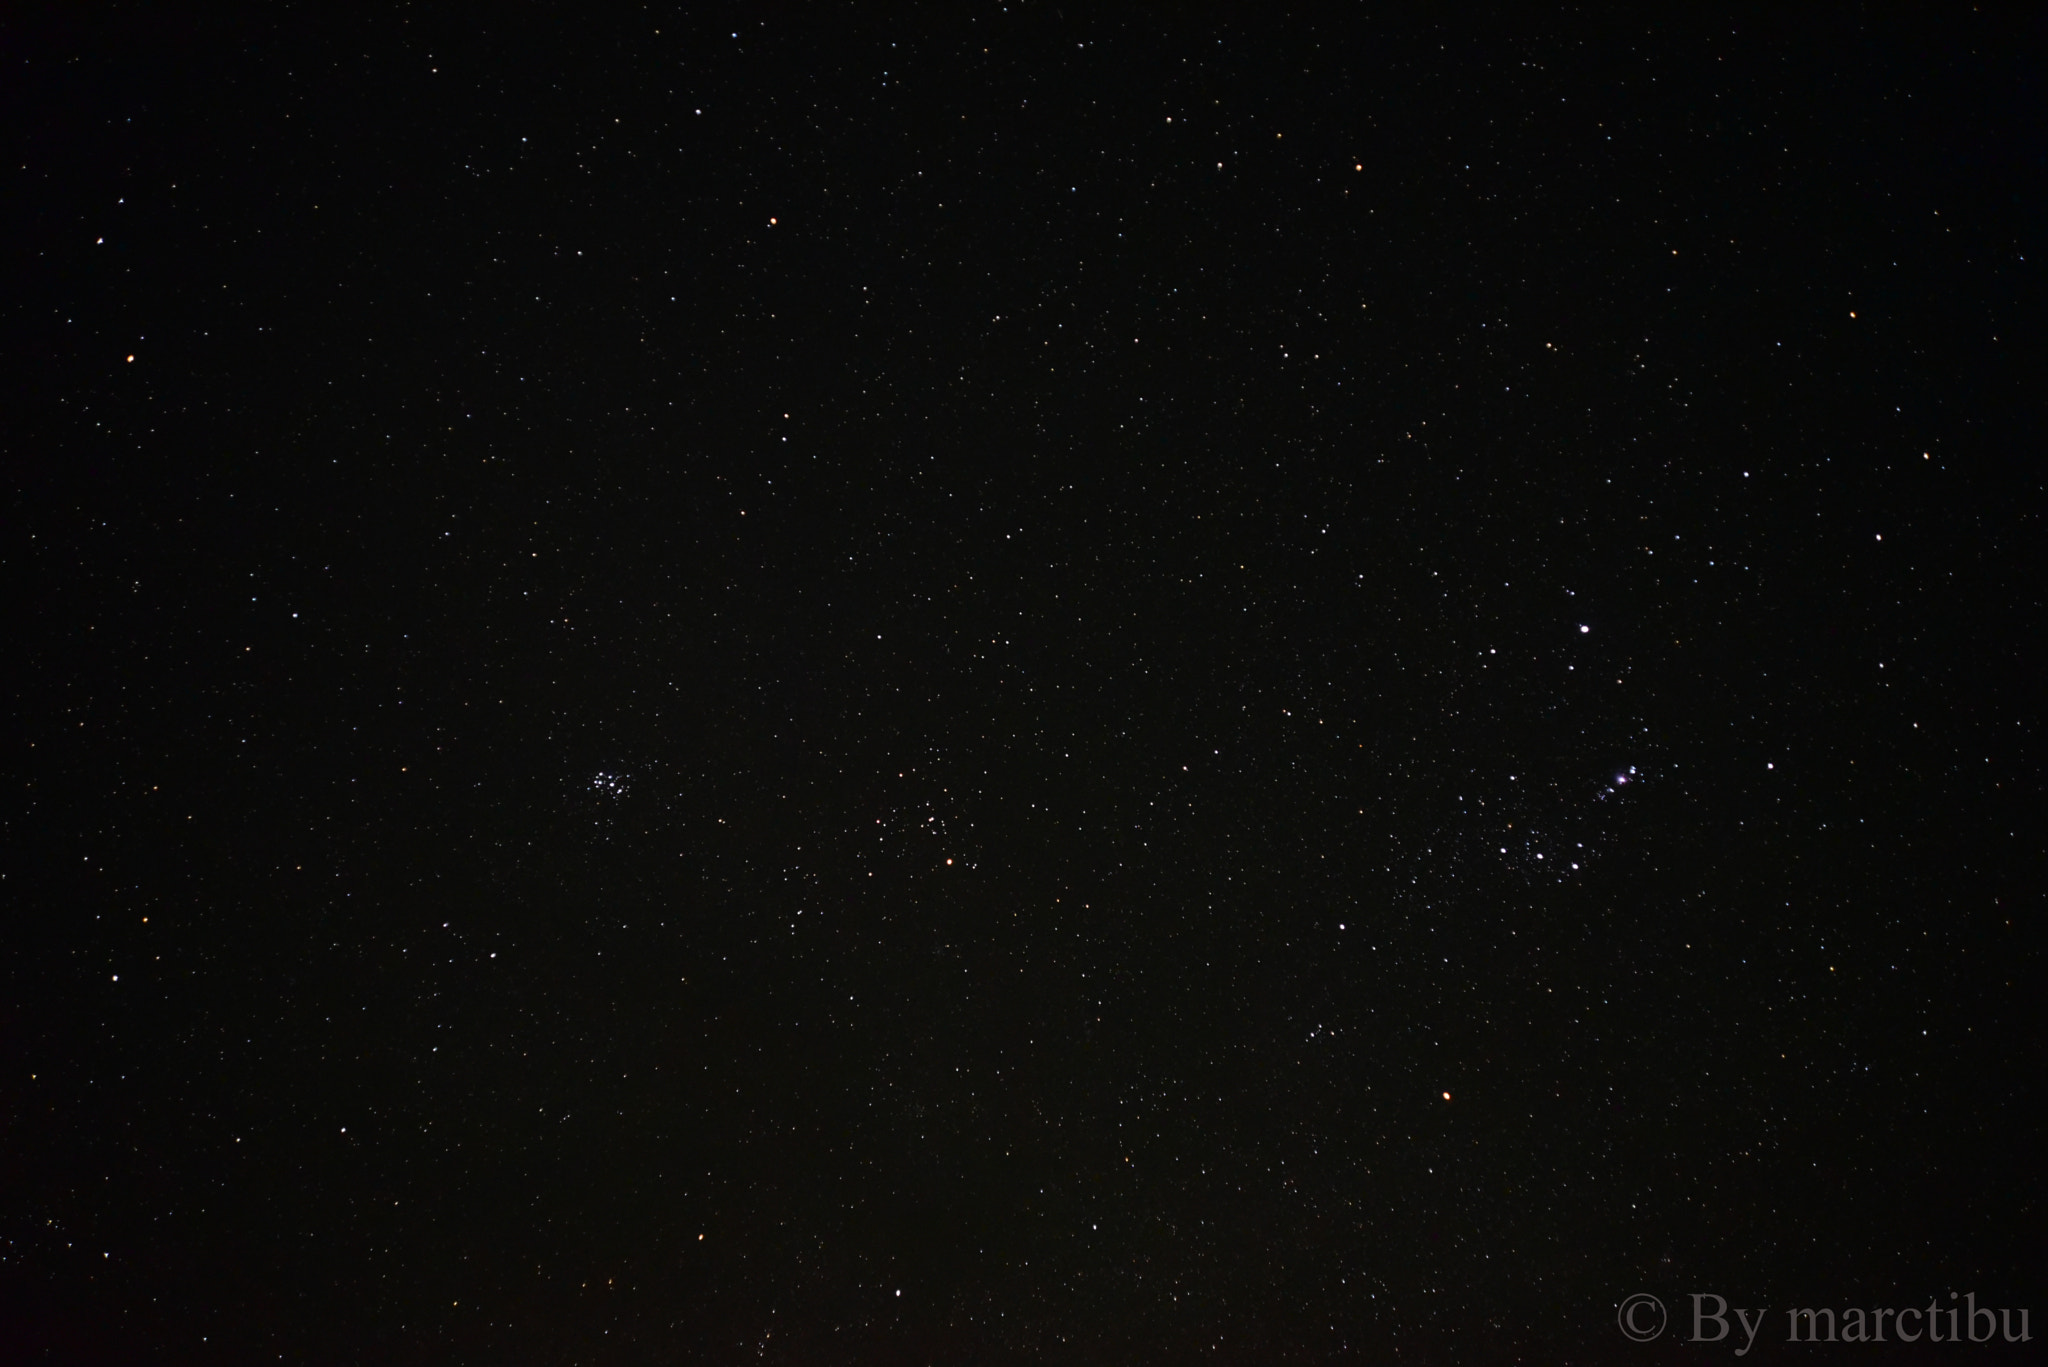 AF Zoom-Nikkor 24-120mm f/3.5-5.6D IF sample photo. Starry sky photography